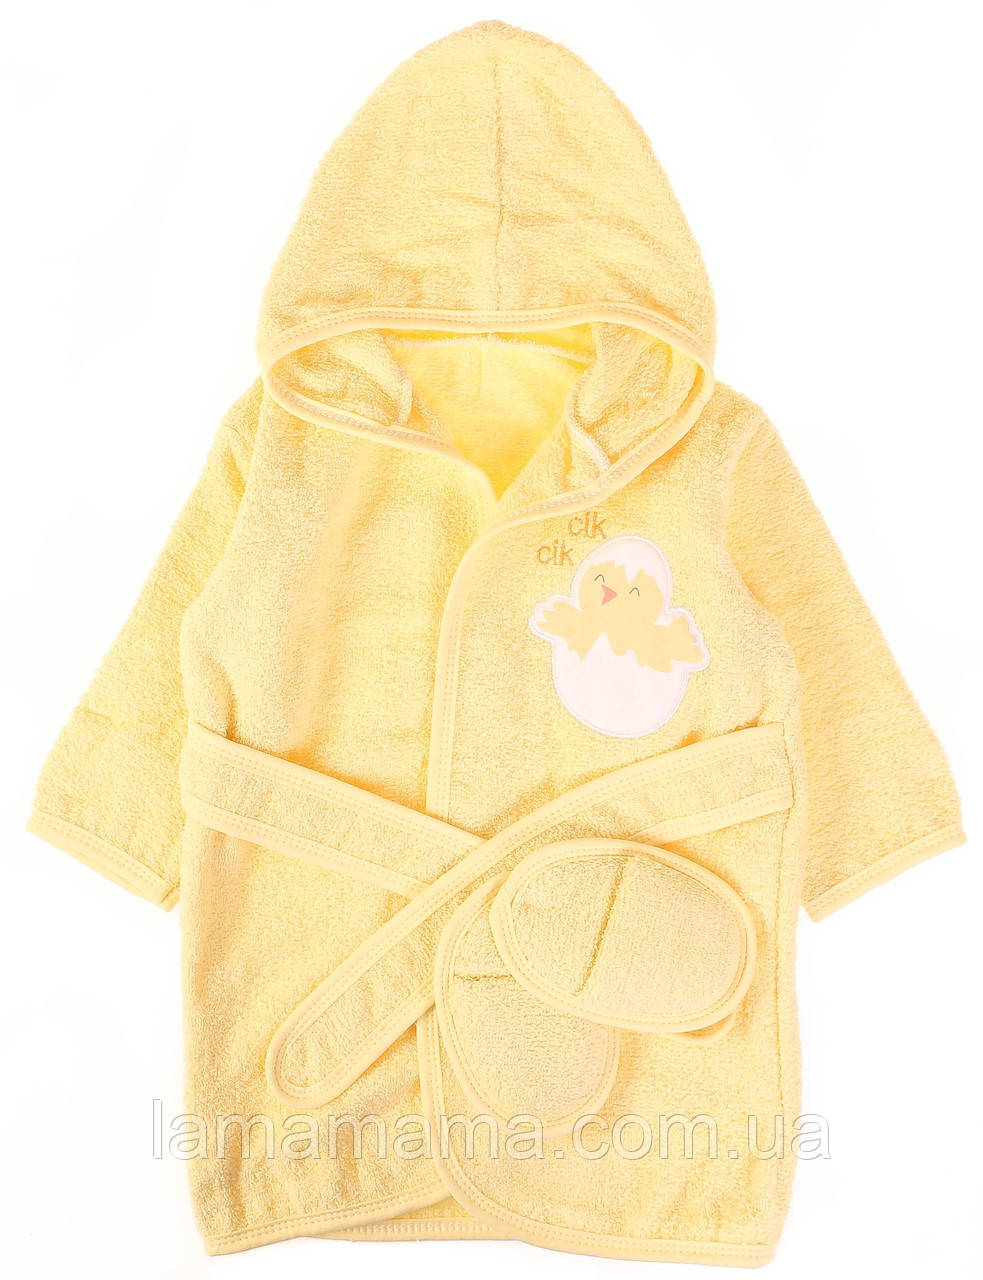 Комплект — дитячий махровий халат із капцями 62-86 см Курча Жовтий Bibaby